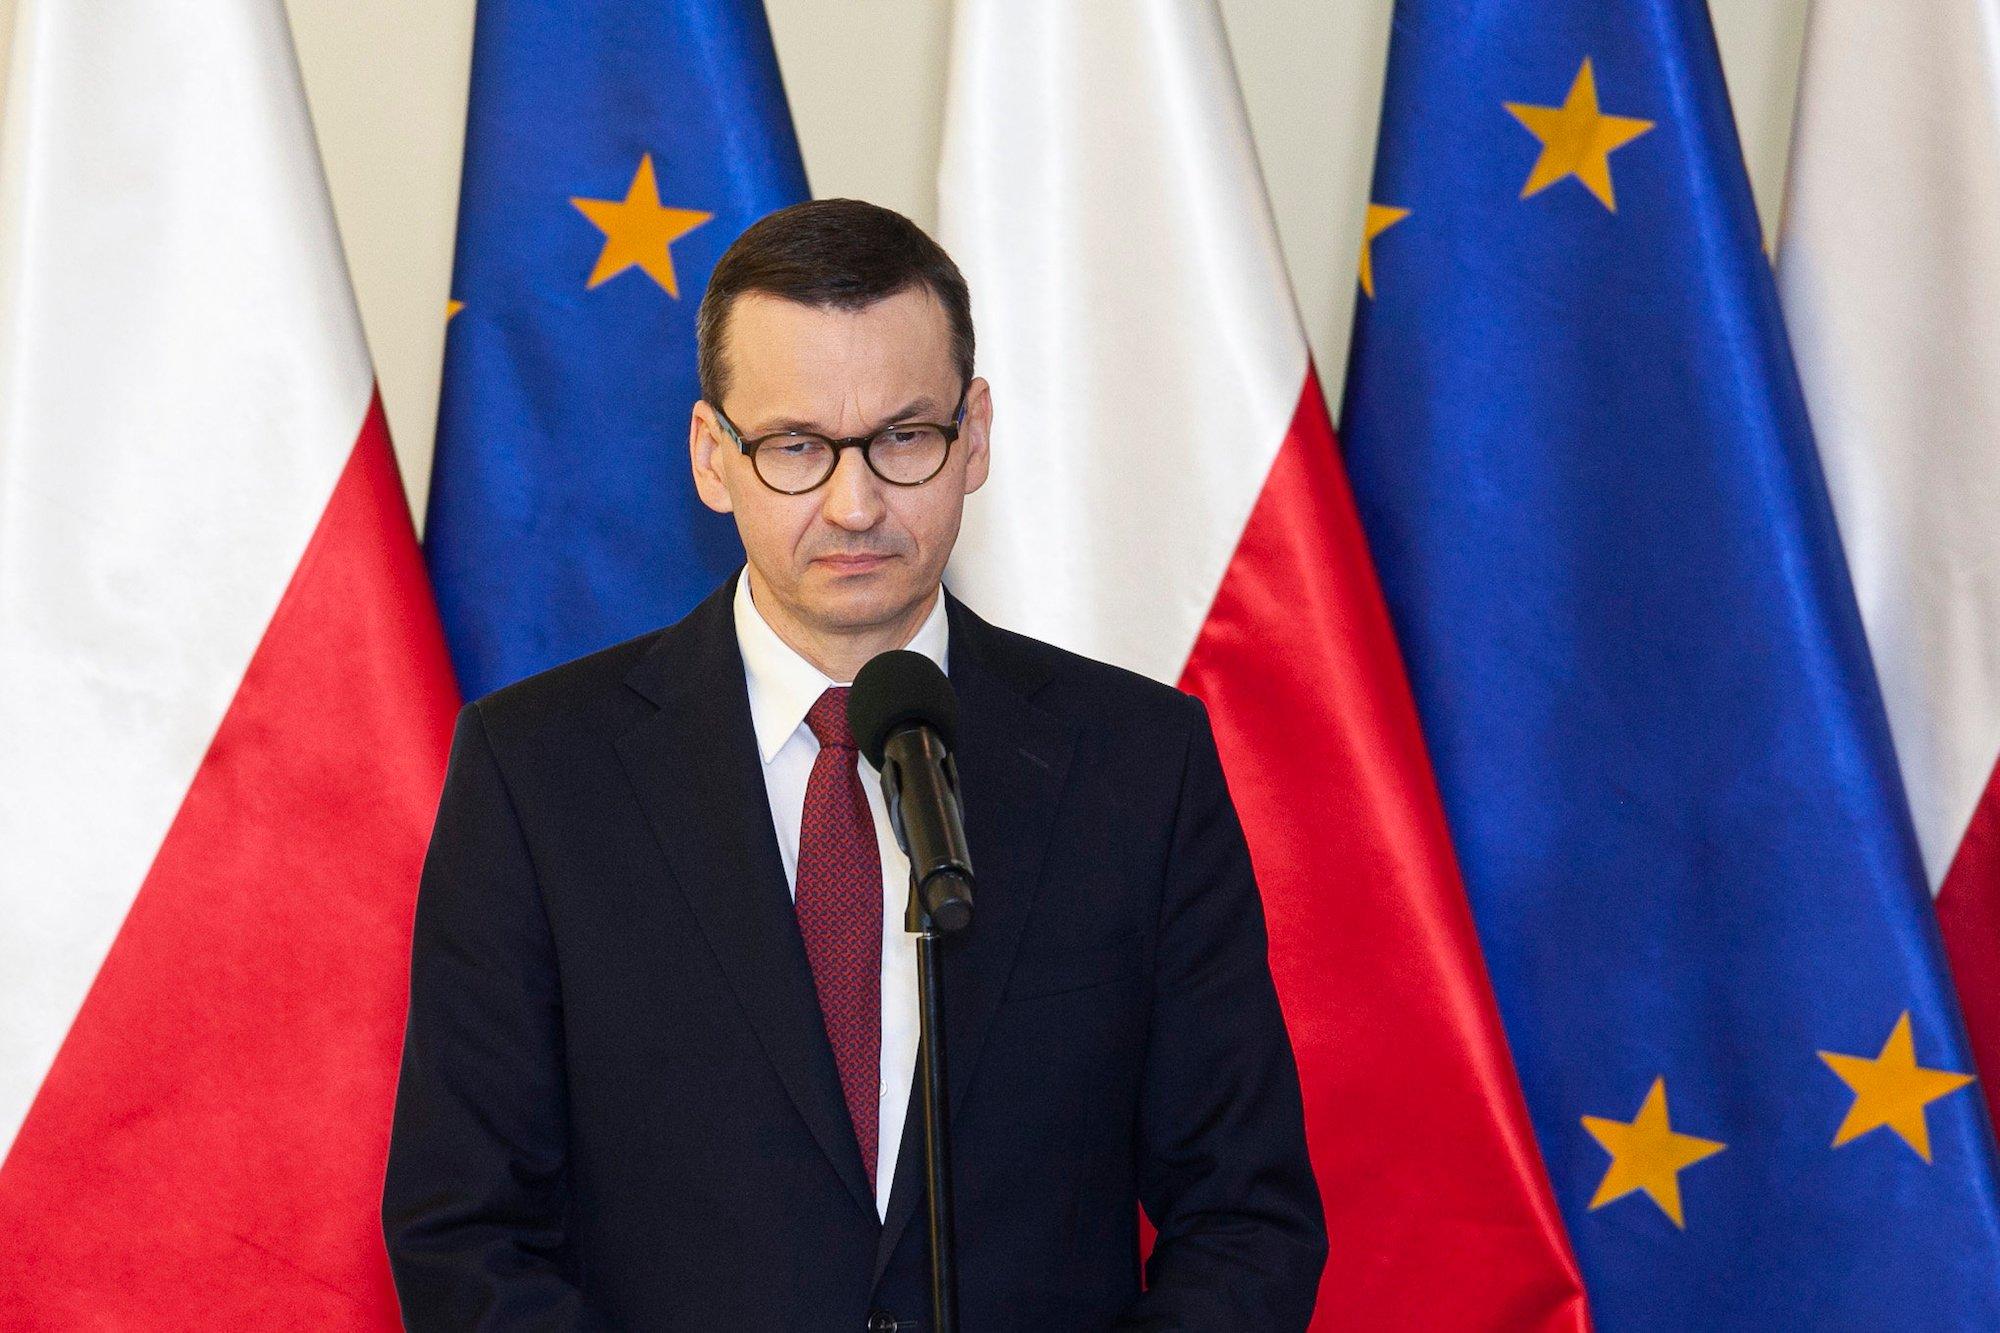 Mateusz Morawiecki na tle flag Polski i UE